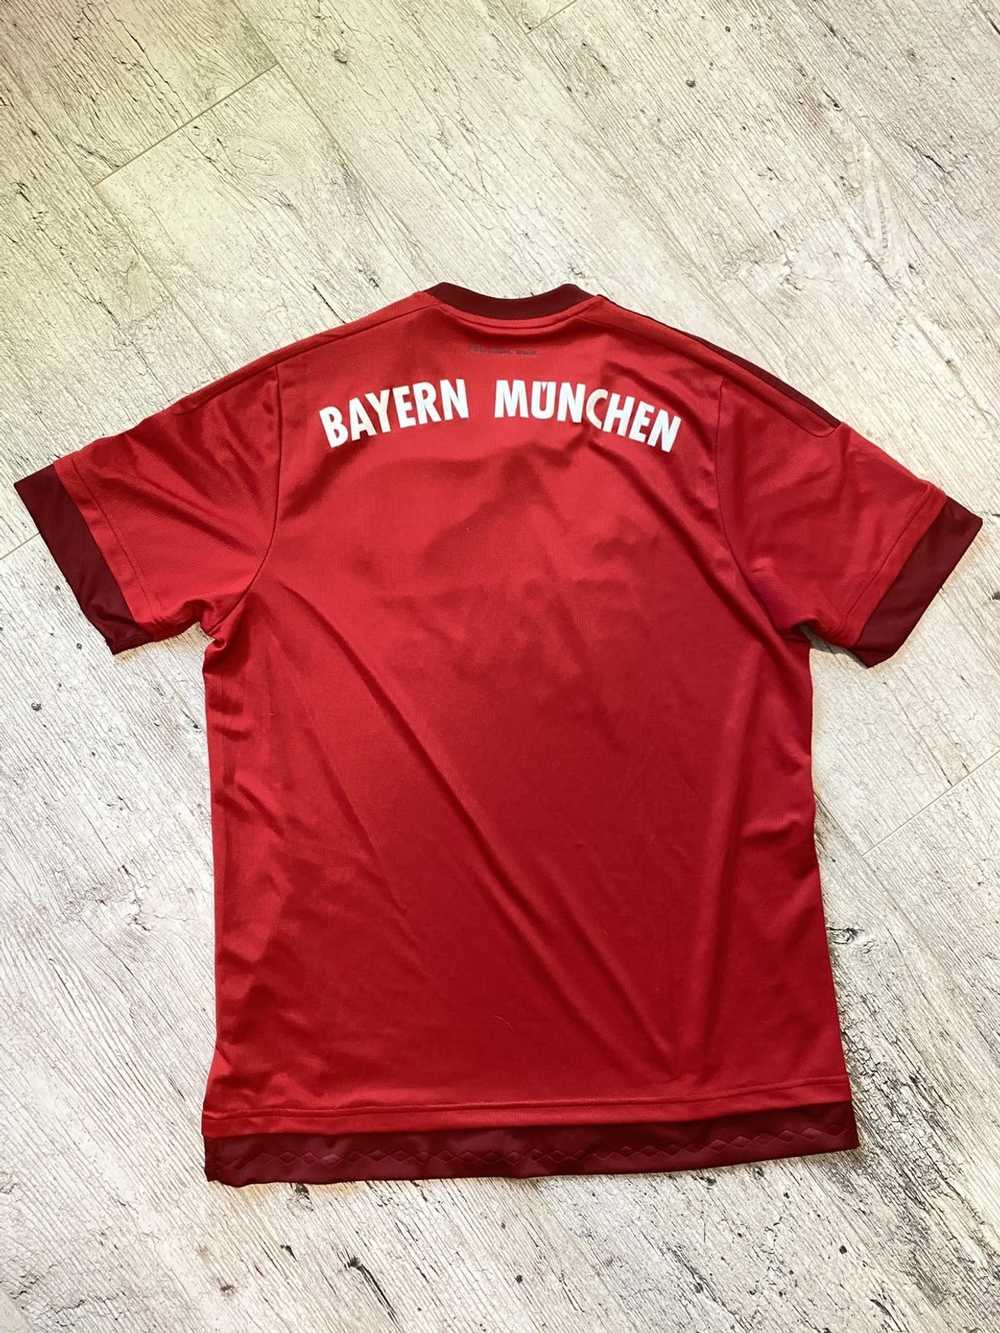 Adidas × Soccer Jersey Bayern Munich F.C. 2015-16… - image 11